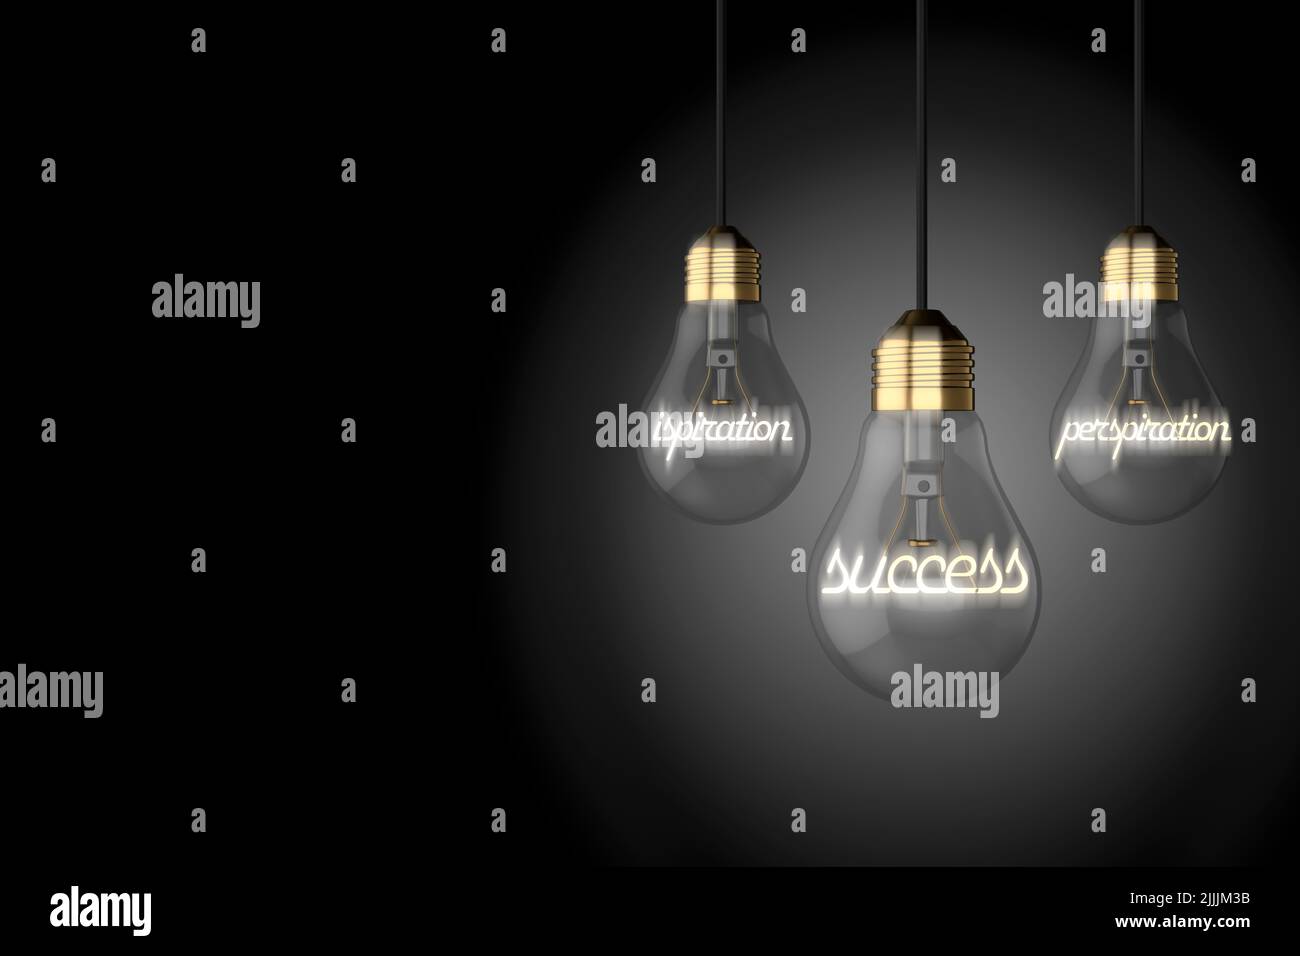 vieux style ampoules ampoules ampoules illustrant l'inspiration transpiration succès concept sur un fond noir Banque D'Images